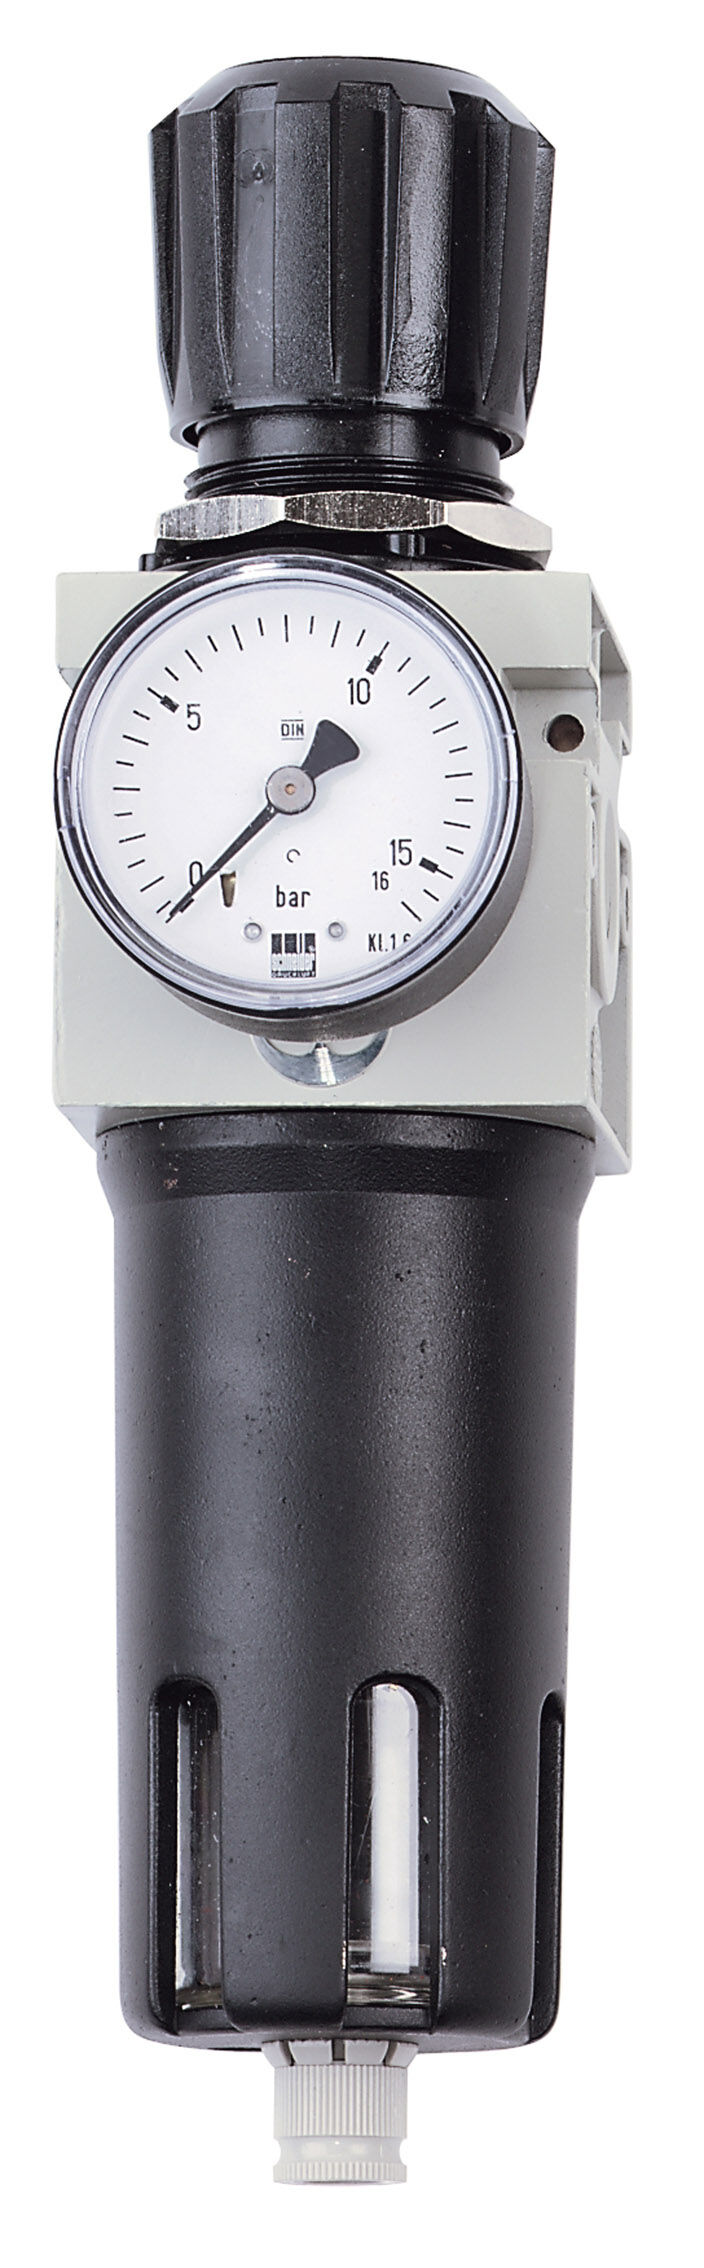 Filtro Schneider riduttore di pressione FDM 1/4 W DGKD225026